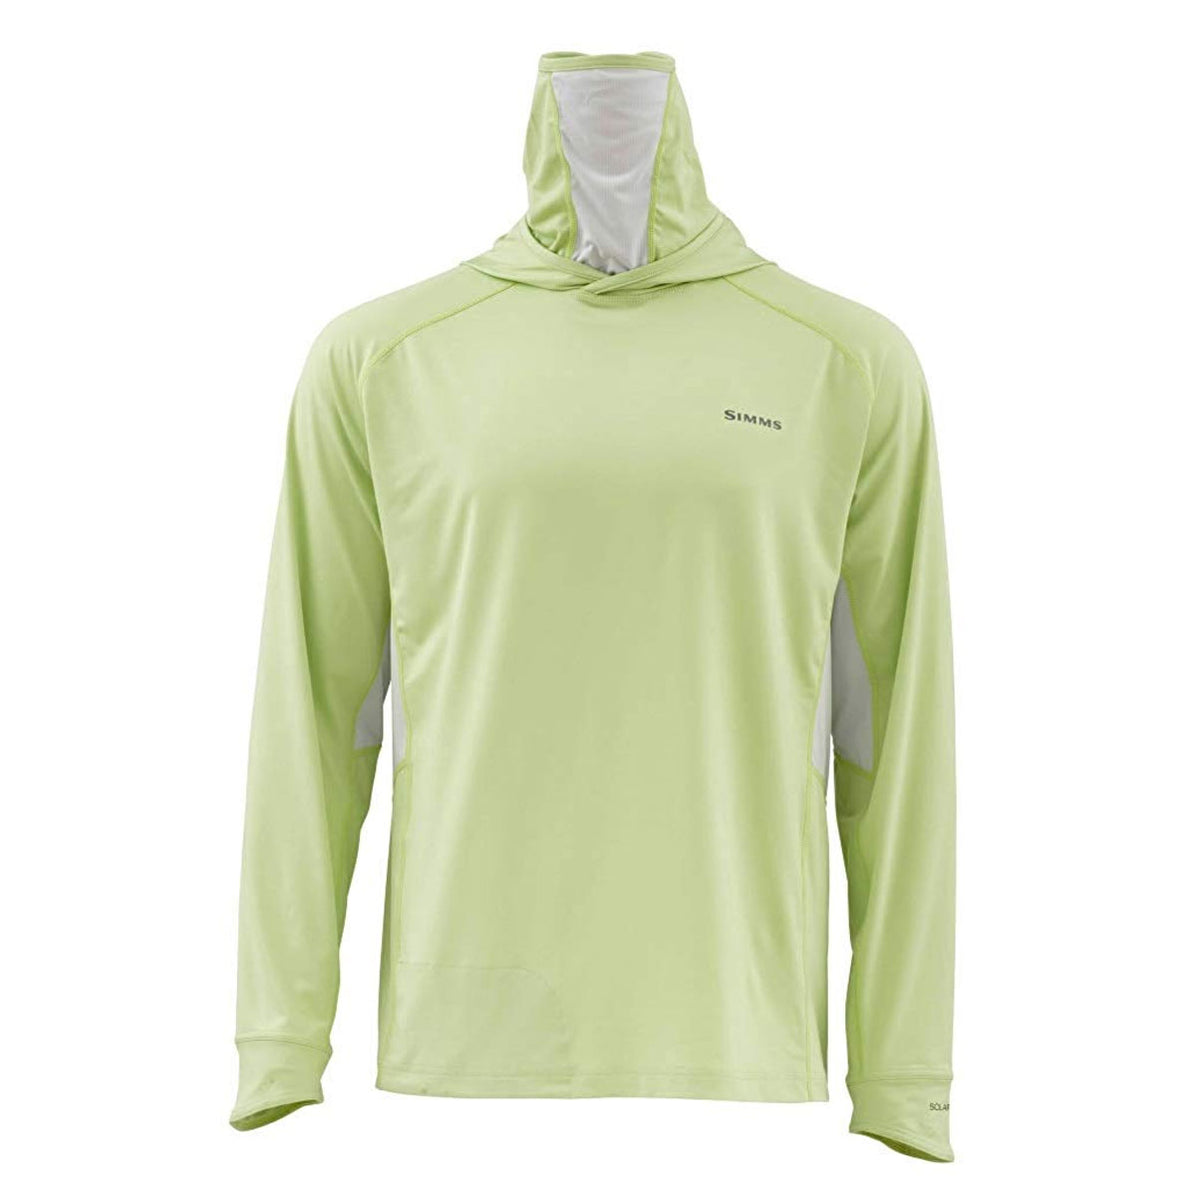 Simms SolarFlex Armor Shirt - Light Green